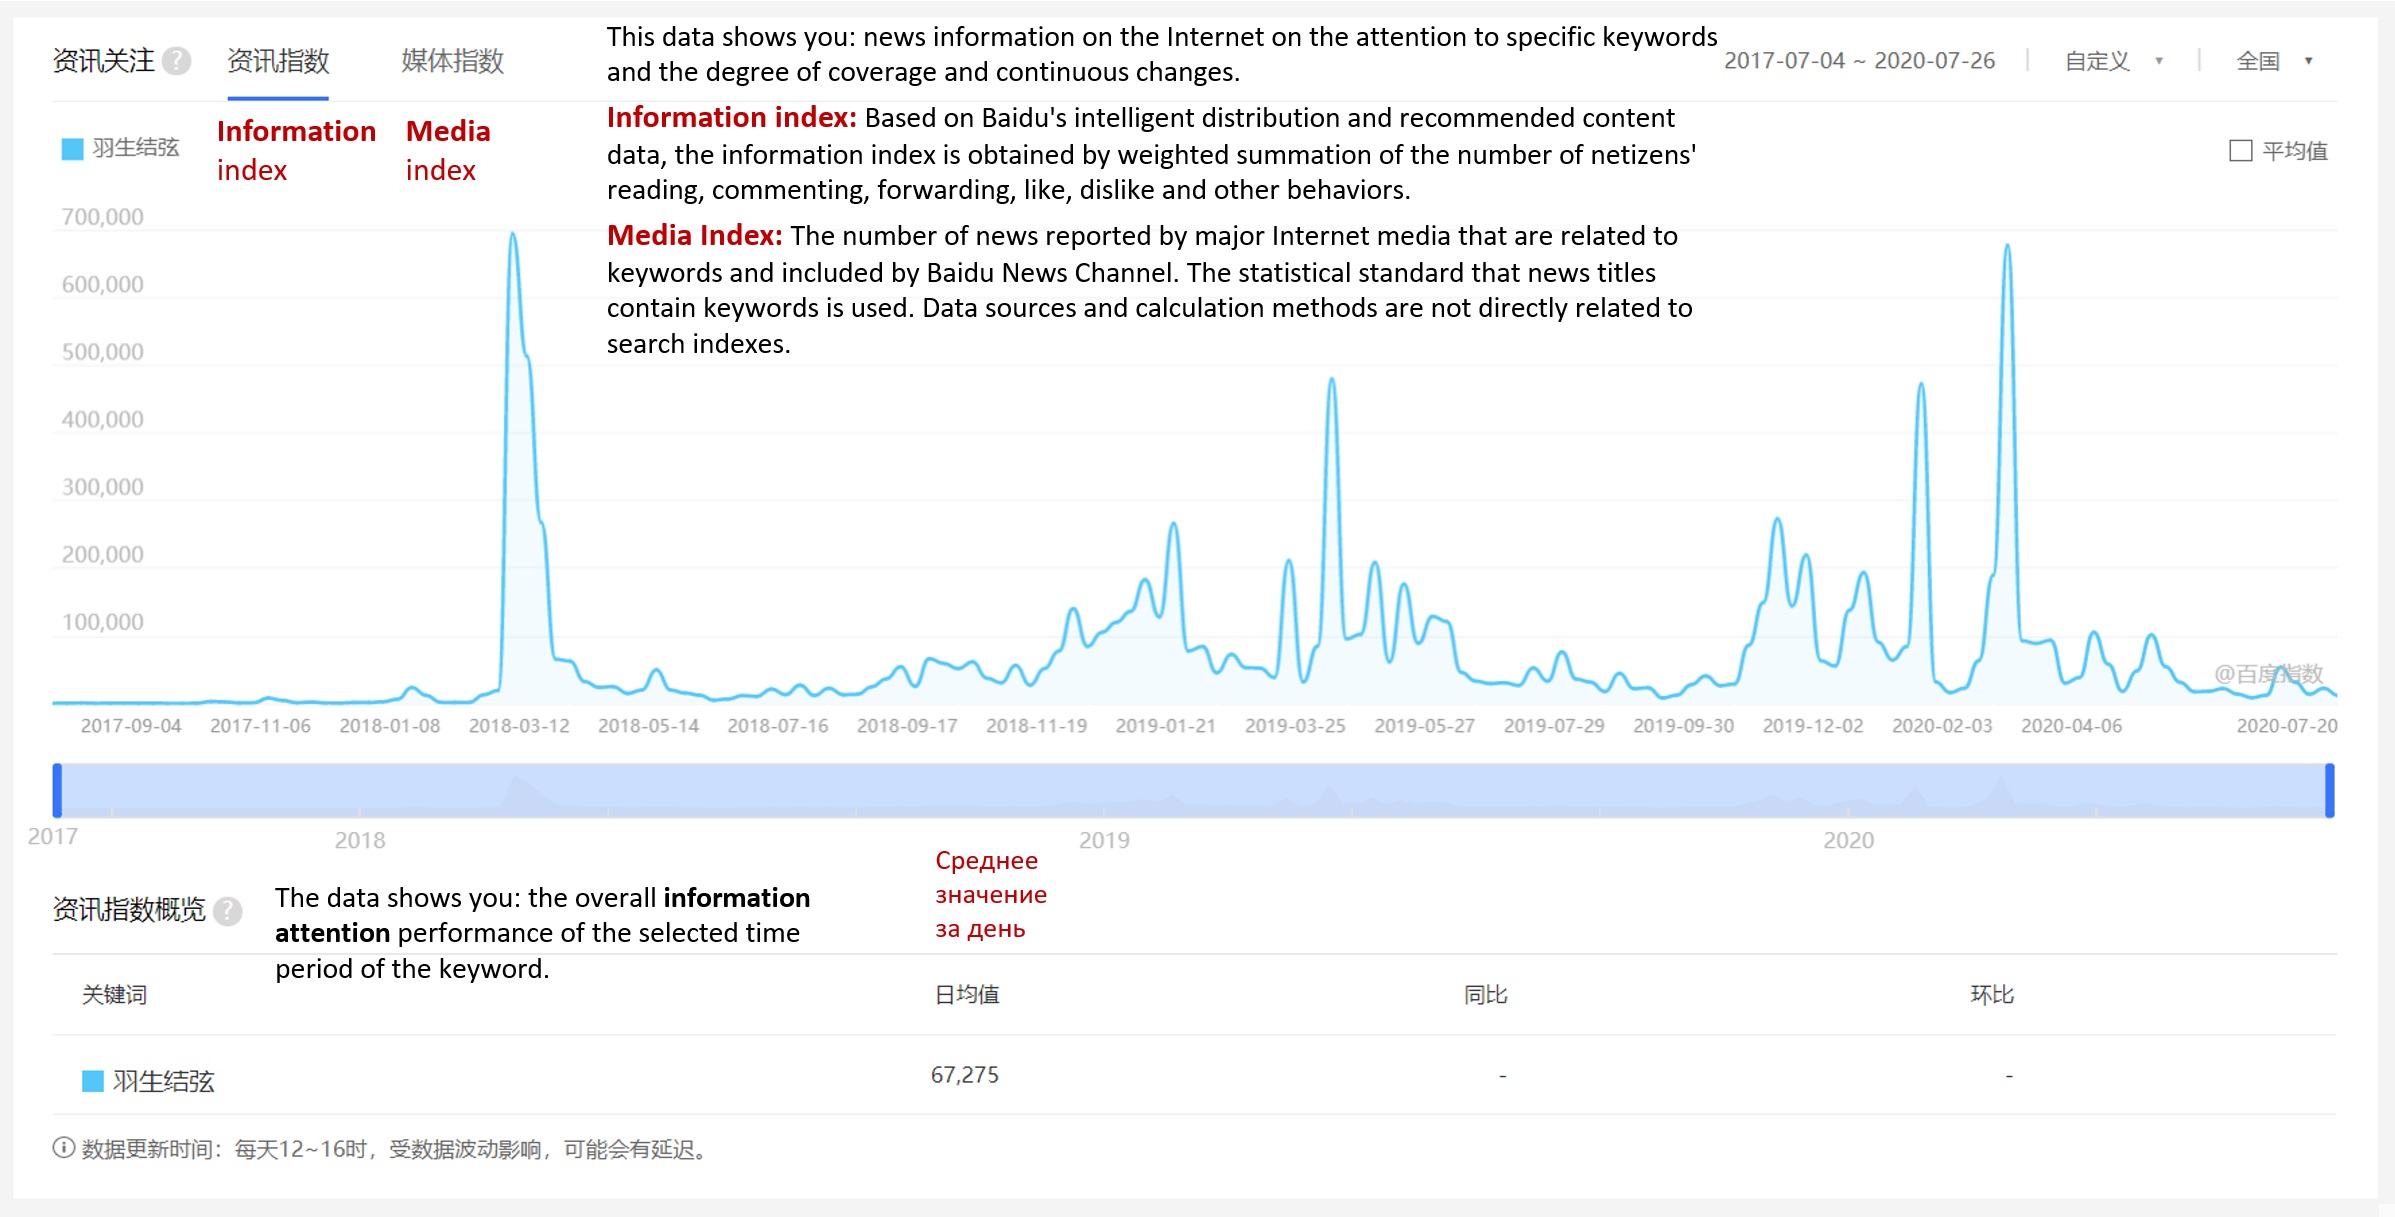 Король и Королева китайского интернета: статистика по поиску, новостям и интересу пользователей